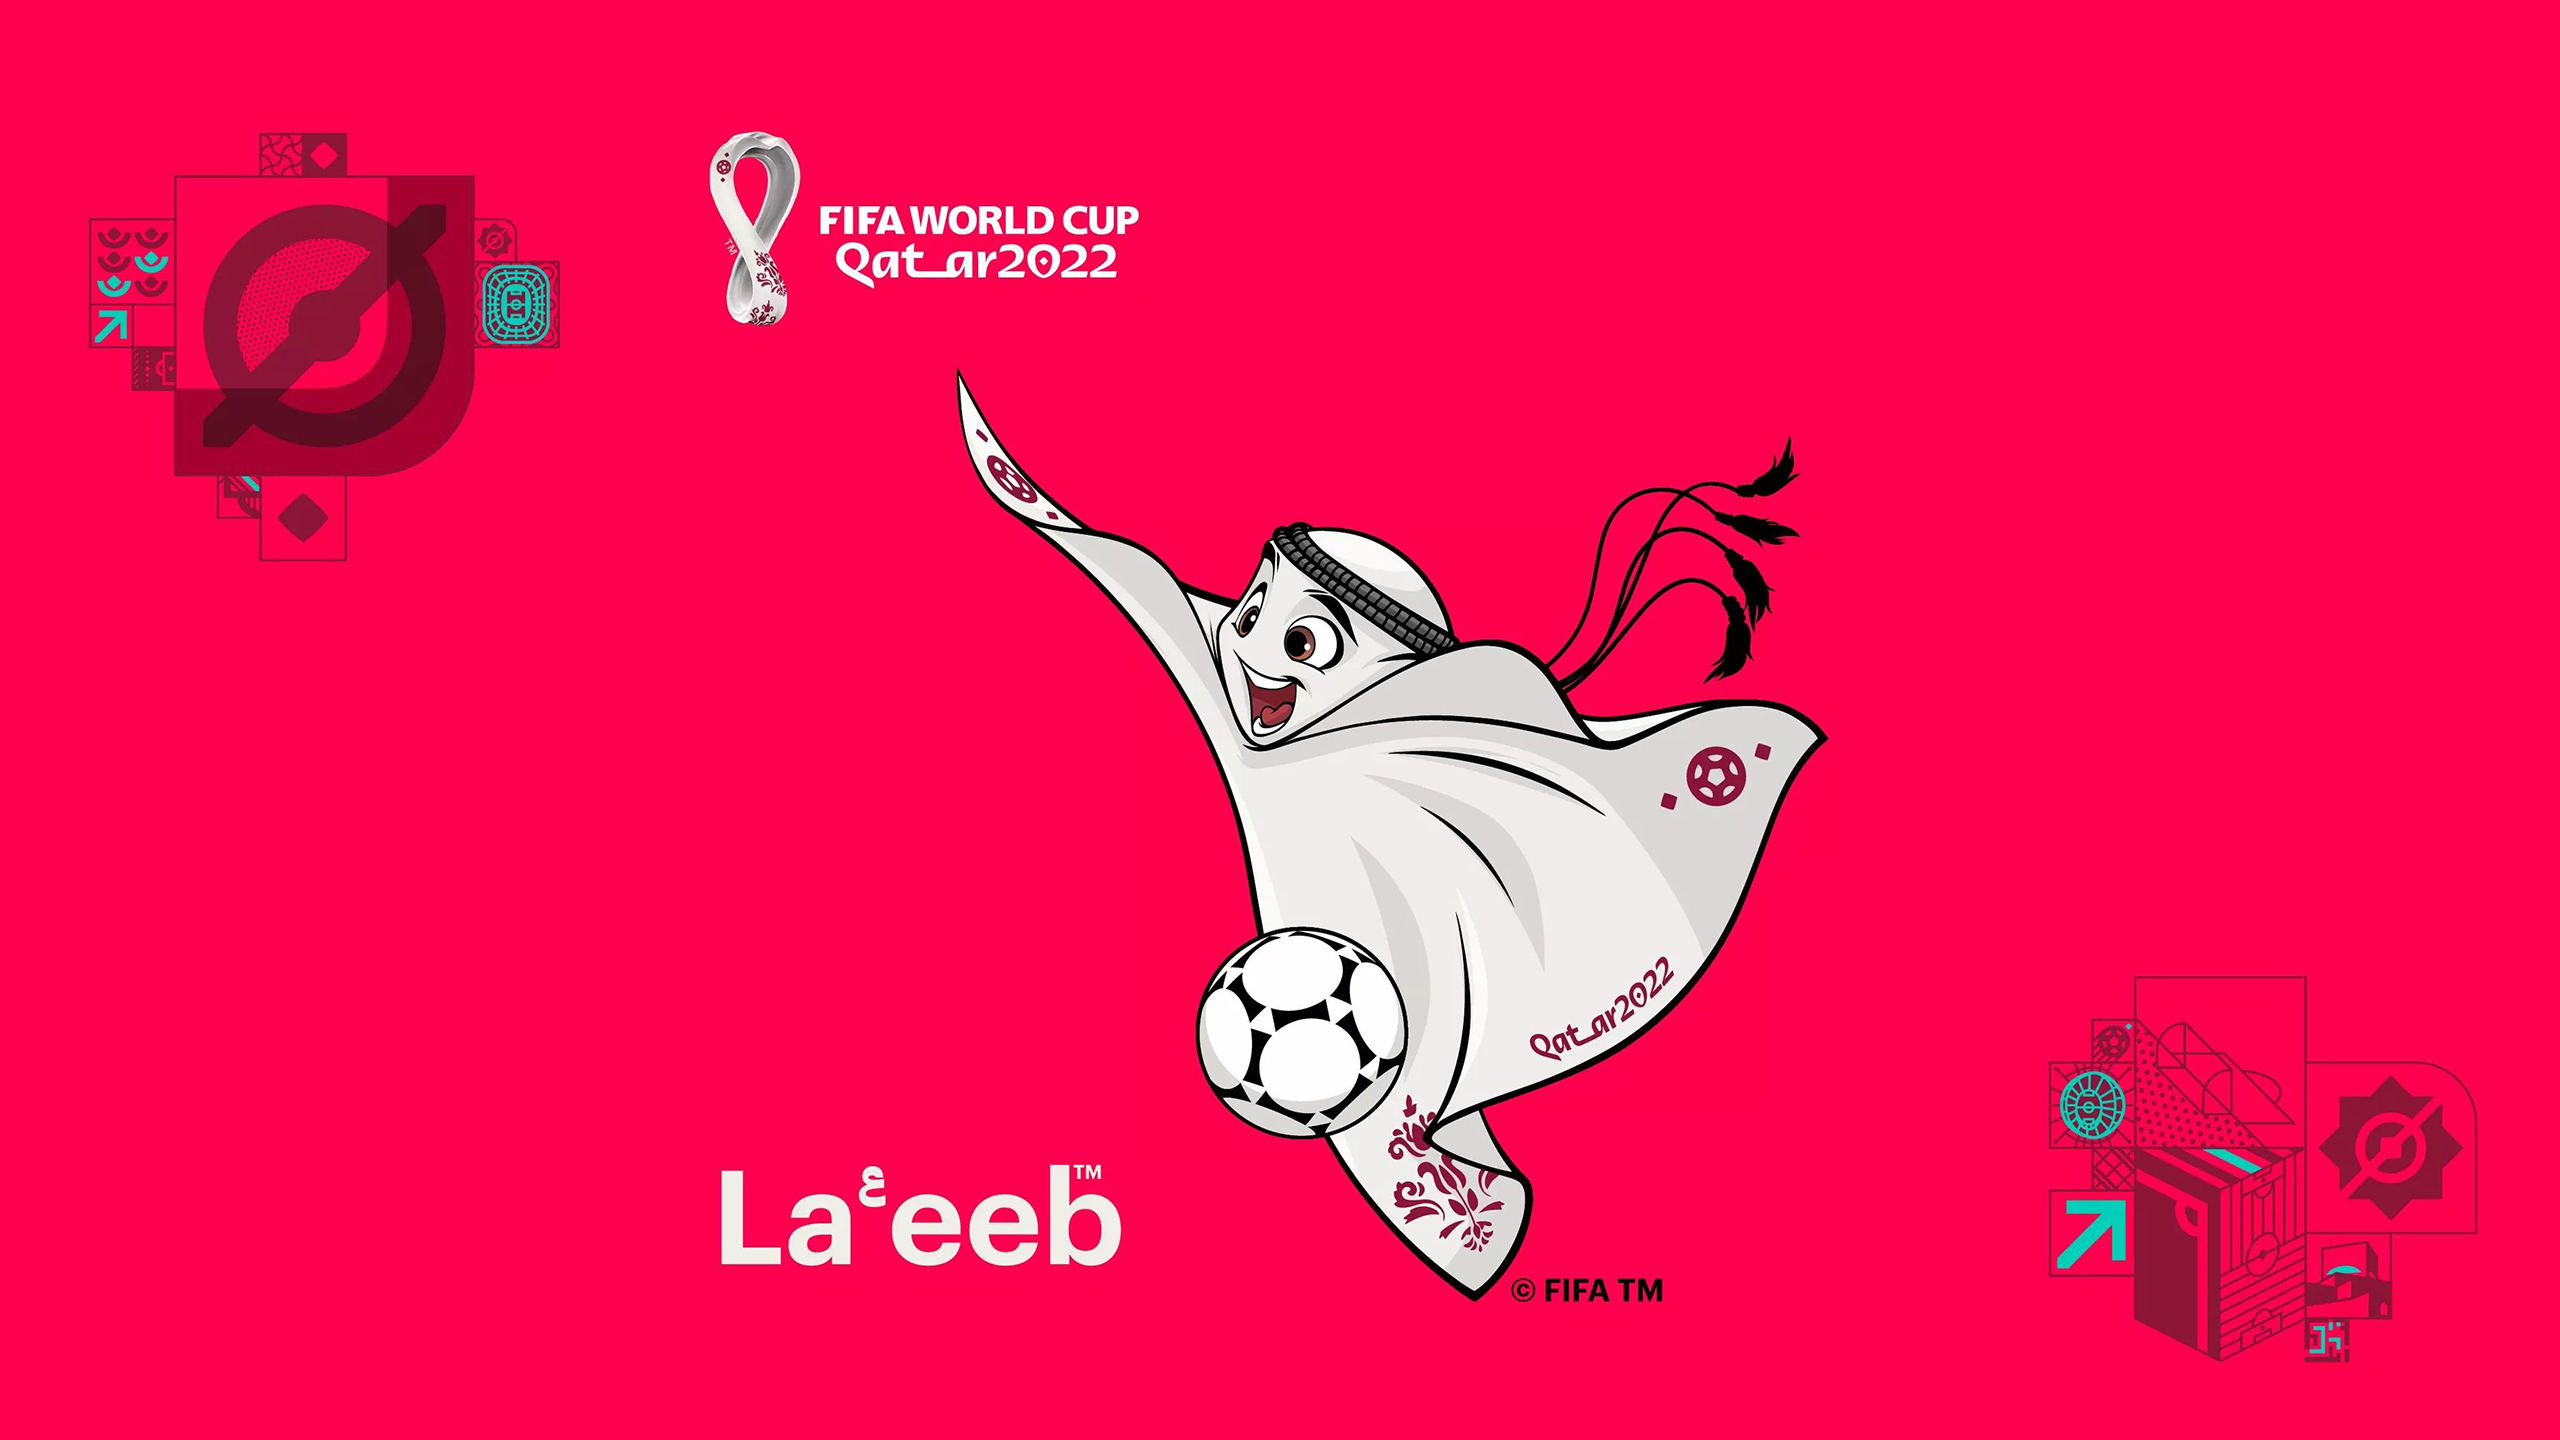 FIFA World Cup Qatar 2022 039 Mistrzostwa Swiata w Pilce Noznej Katar 2022, Maskotka